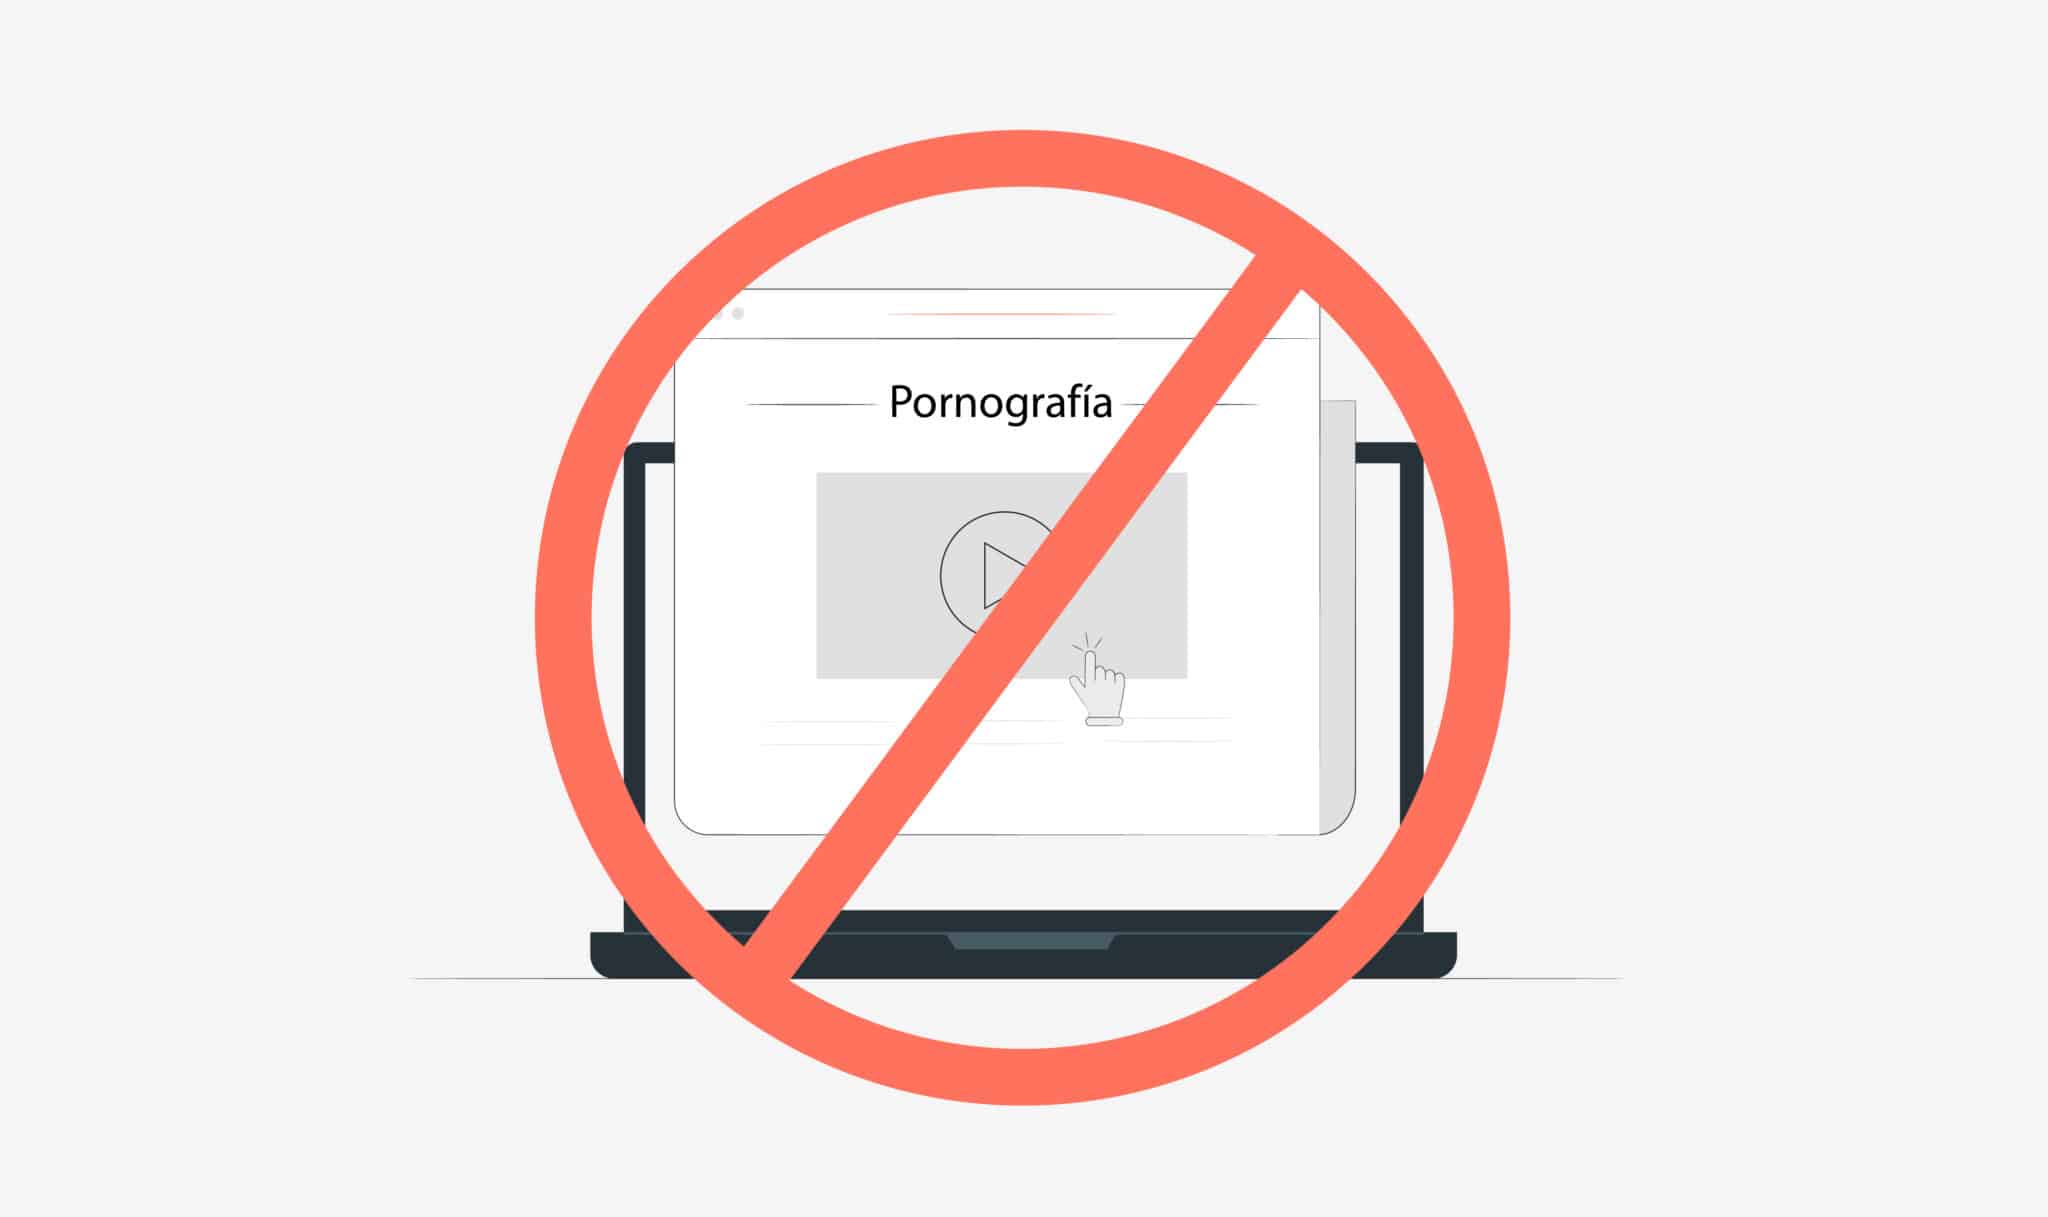 bloquear pornografia